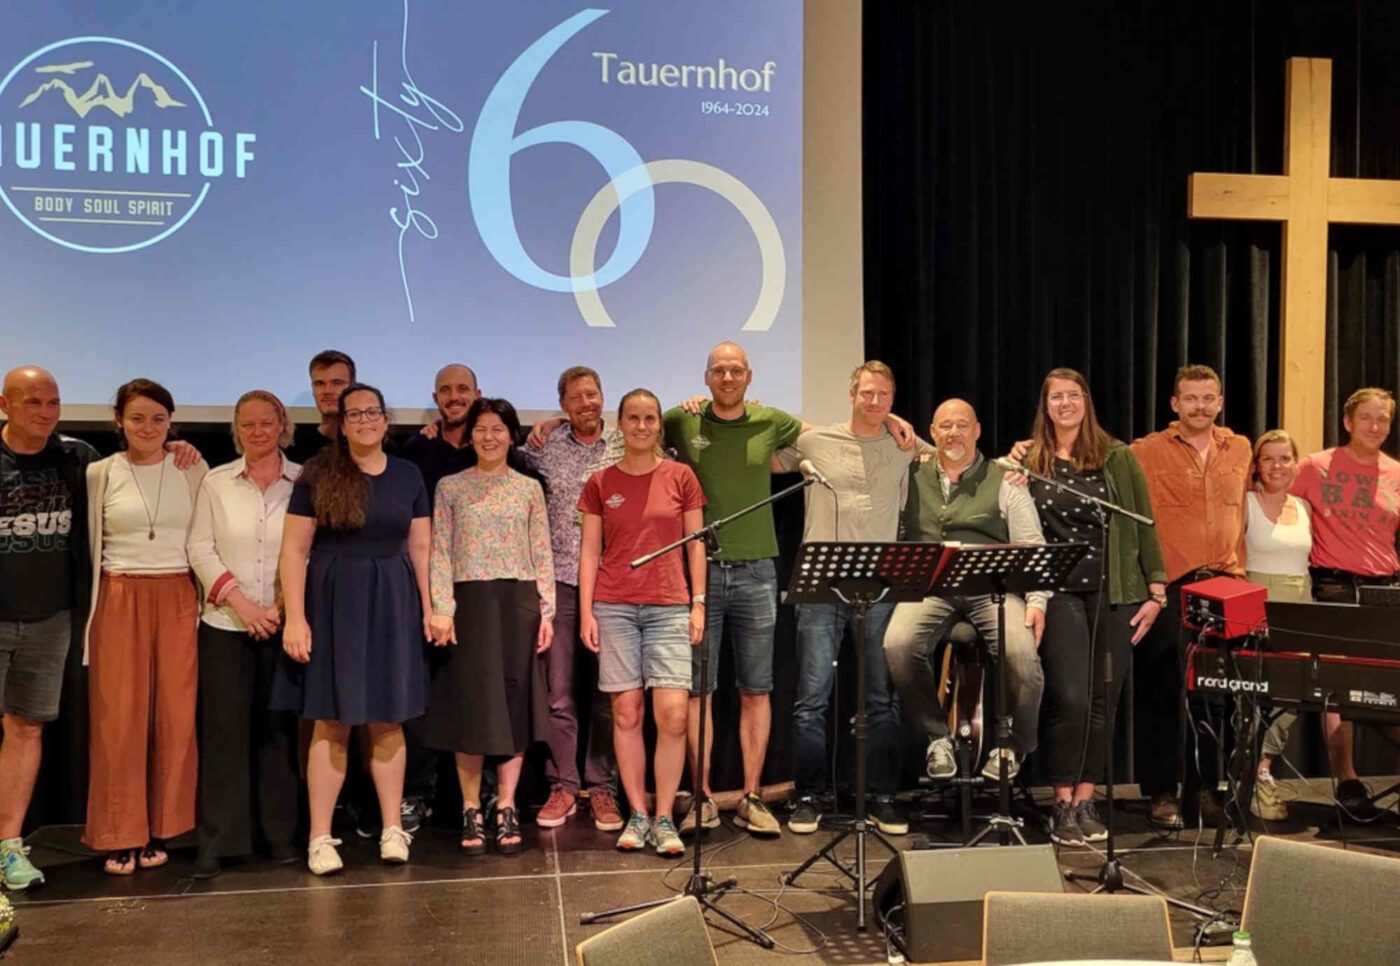 Das Tauernhof-Team bei der 60-Jahr-Jubiläumsfeier. In der Bildmitte (8.v.l.) Direktor Martin Buchsteiner. (Foto: Gerhard Krömer)